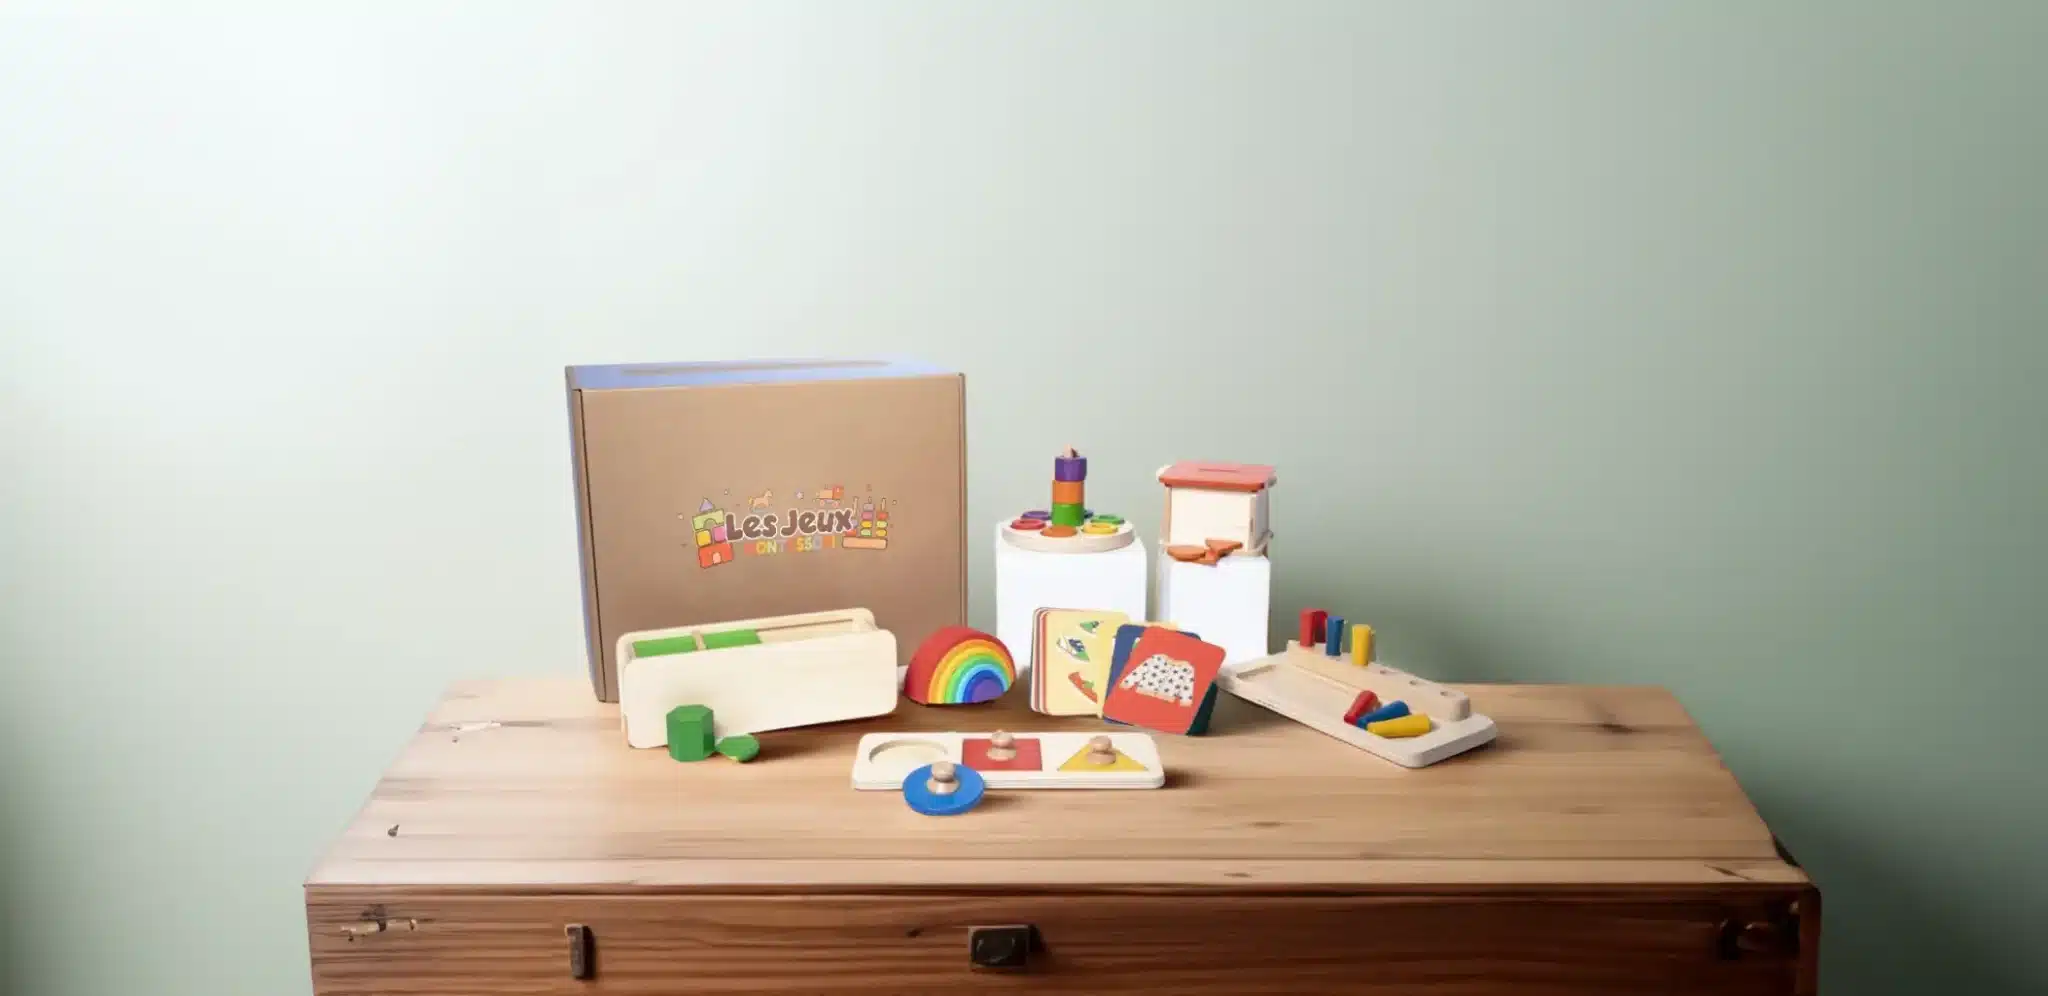 Ein Montessori-Tisch zeigt eine Holzkiste, die mit Spielzeug gefüllt ist.